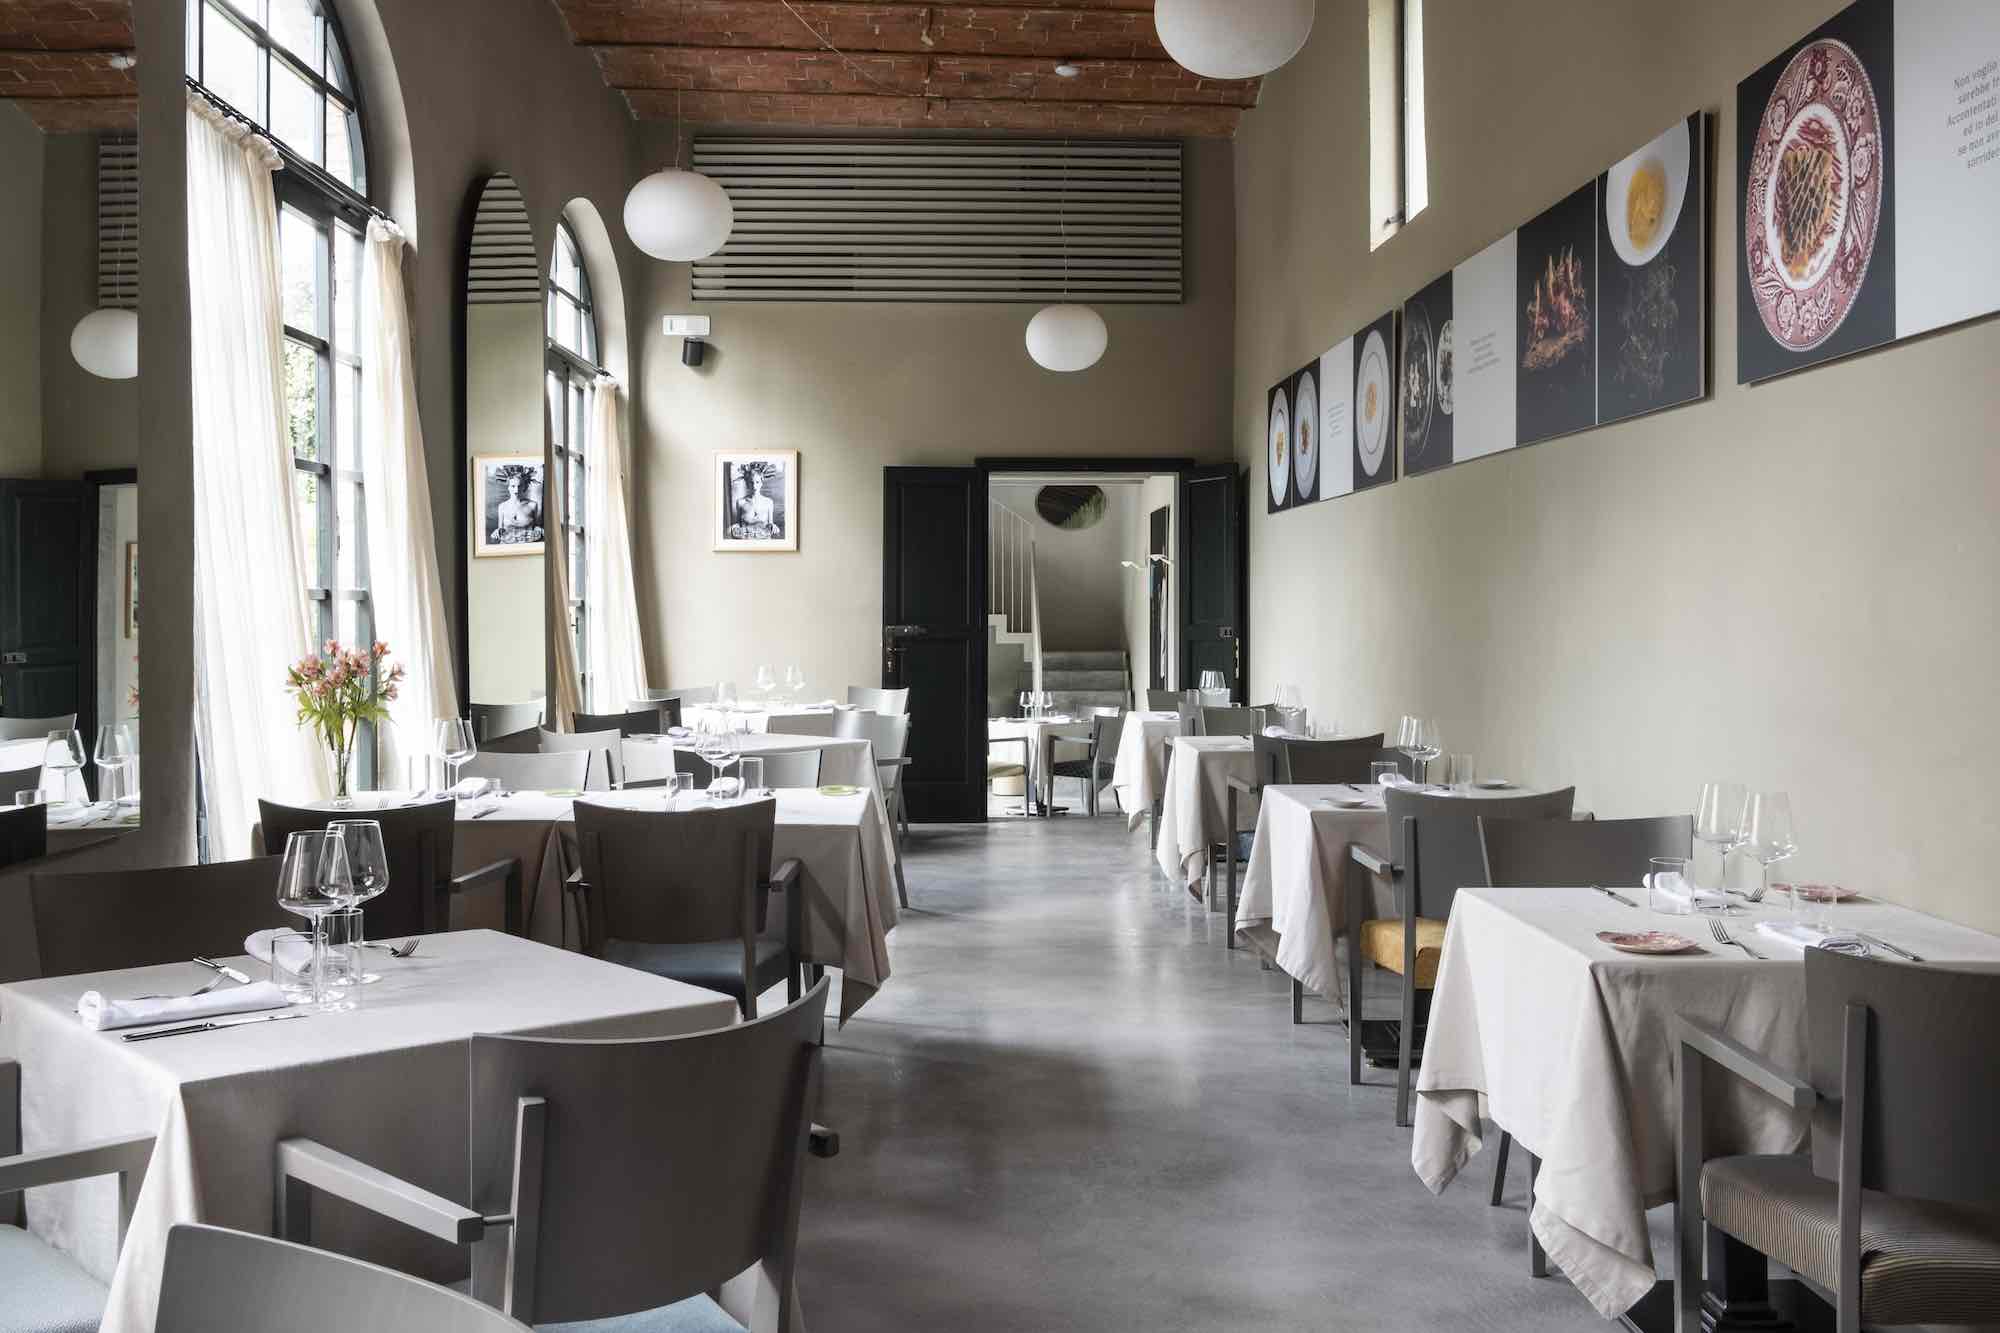 Chef Cristiano Tomei è uno degli chef stellati della Toscana. Il suo ristorante, L'Imbuto, si trova a Lucca nelle scuderie di Palazzo Pfanner